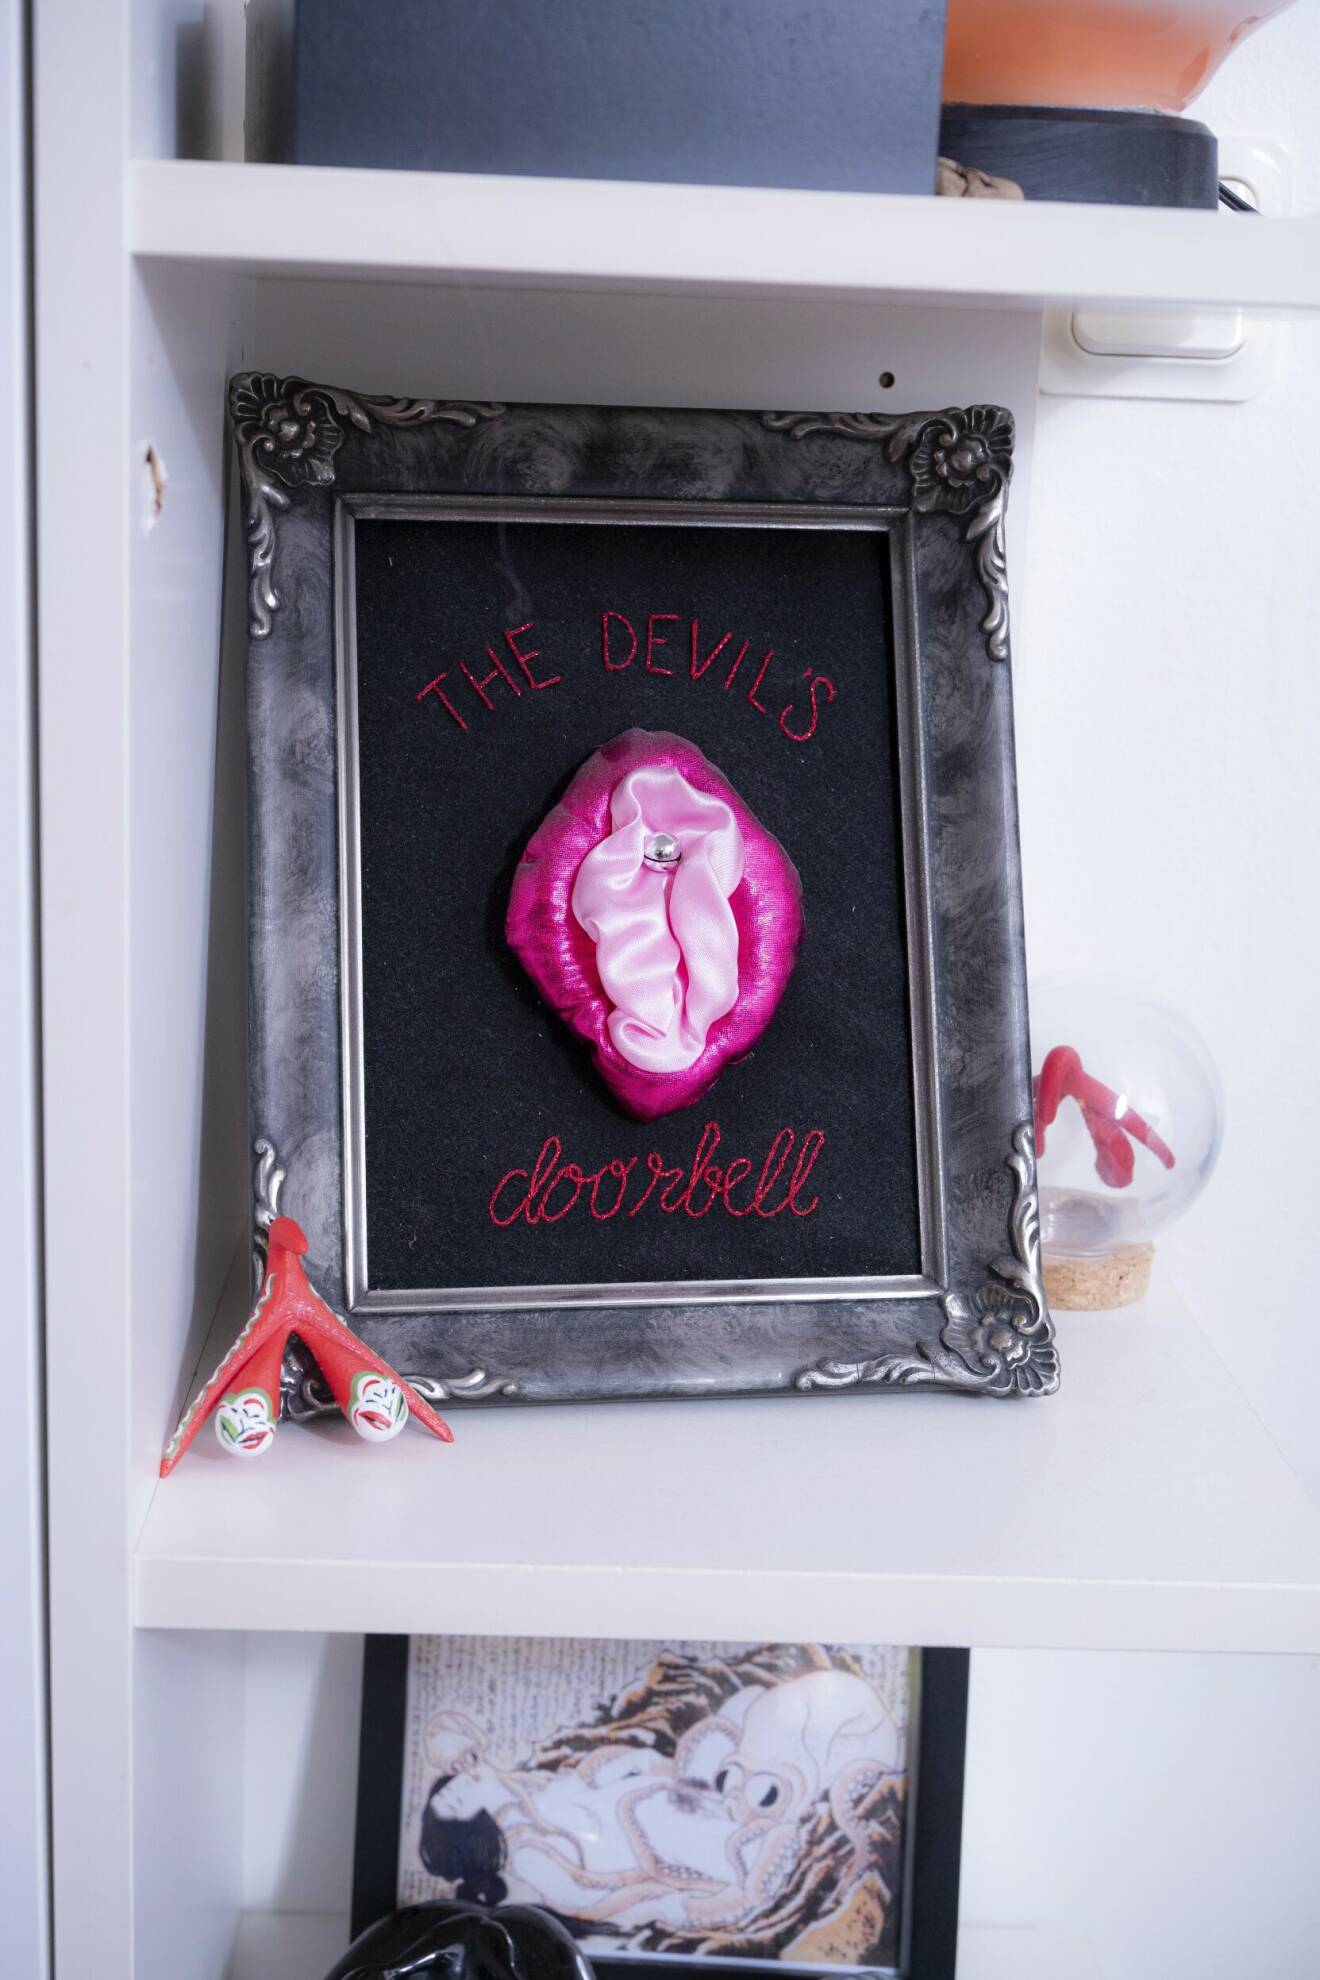 En tavla med vagina och blygdläppar i tyg och klitoris som en silvrig knopp. Runt motivet finns texten "The devil's doorbell".